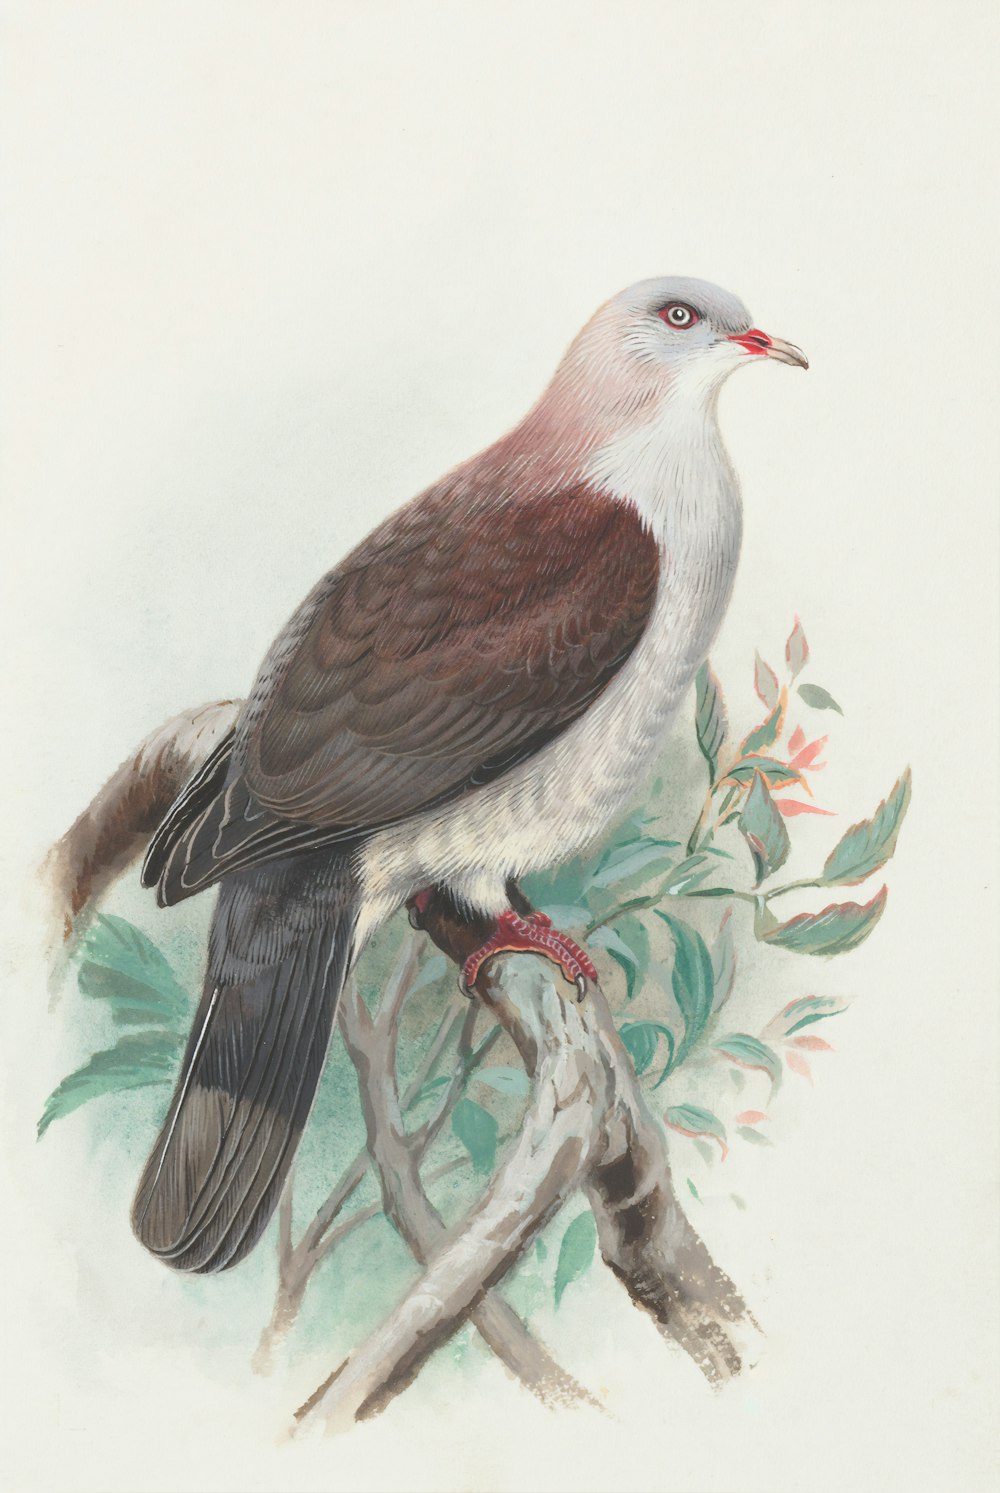 pássaro marrom e branco na pintura do galho da árvore